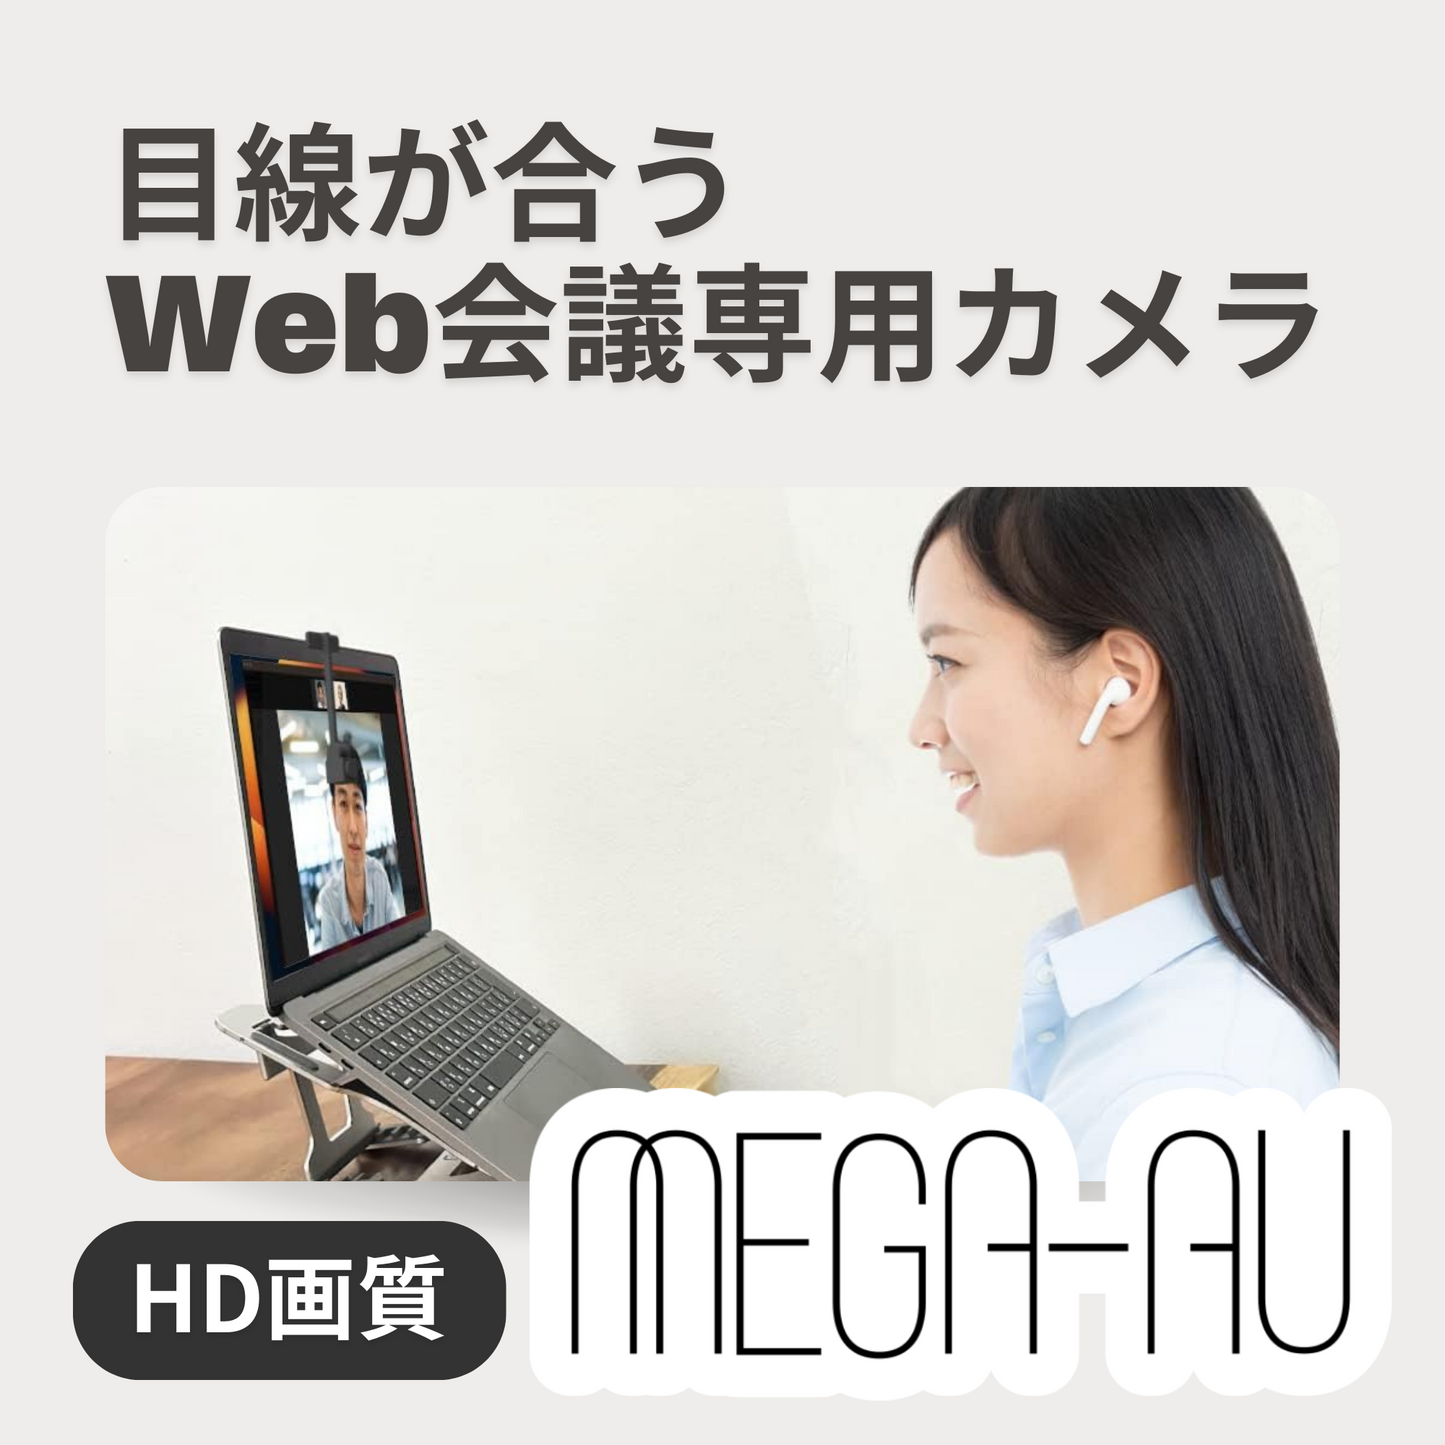 MEGA-AU Ver.3.0